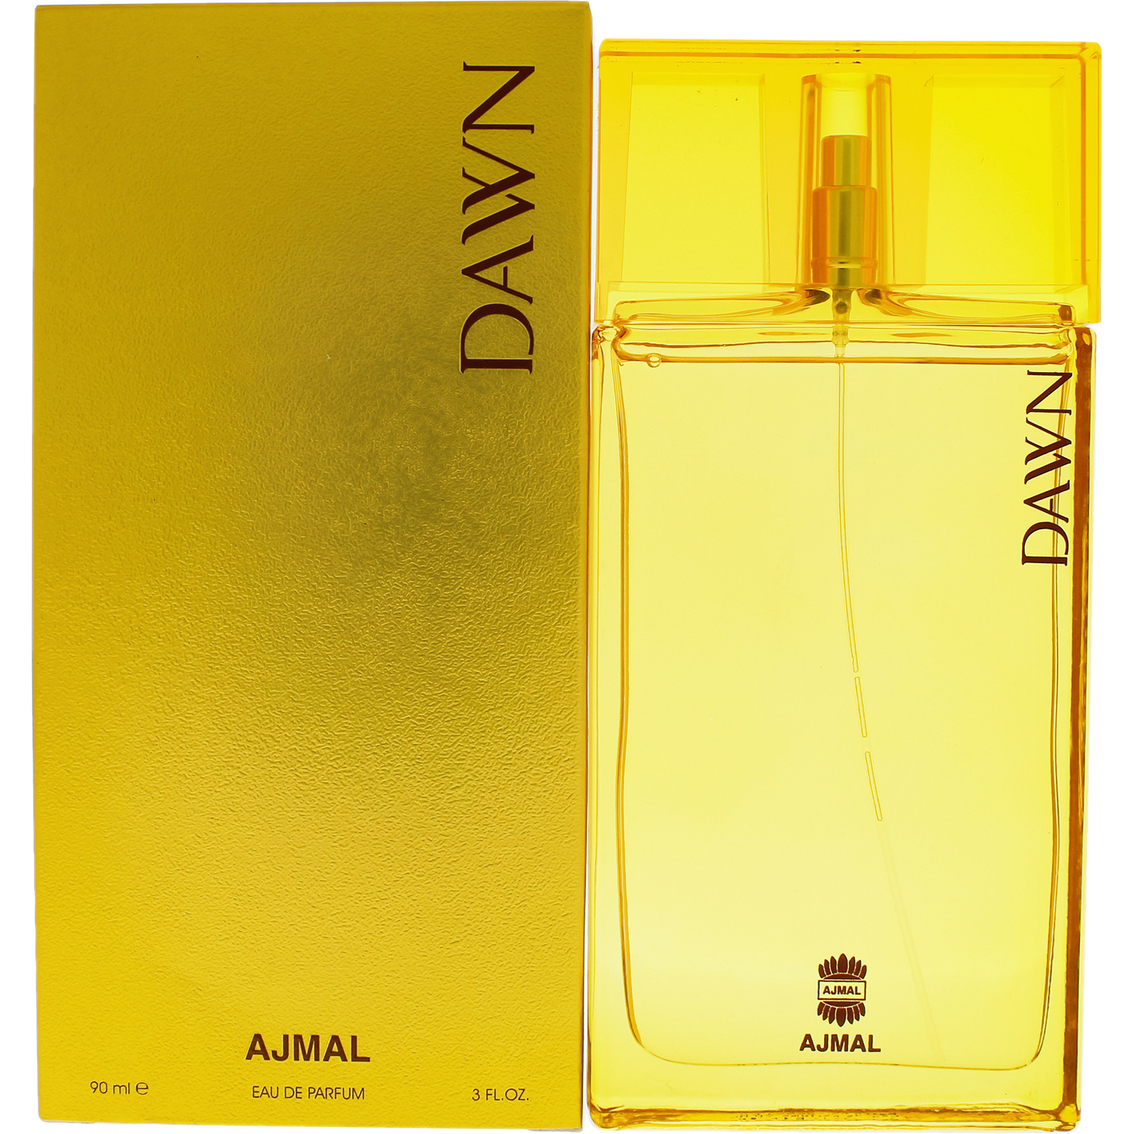 Ajmal Dawn for Women Eau de Parfum Spray - Image 2 of 2